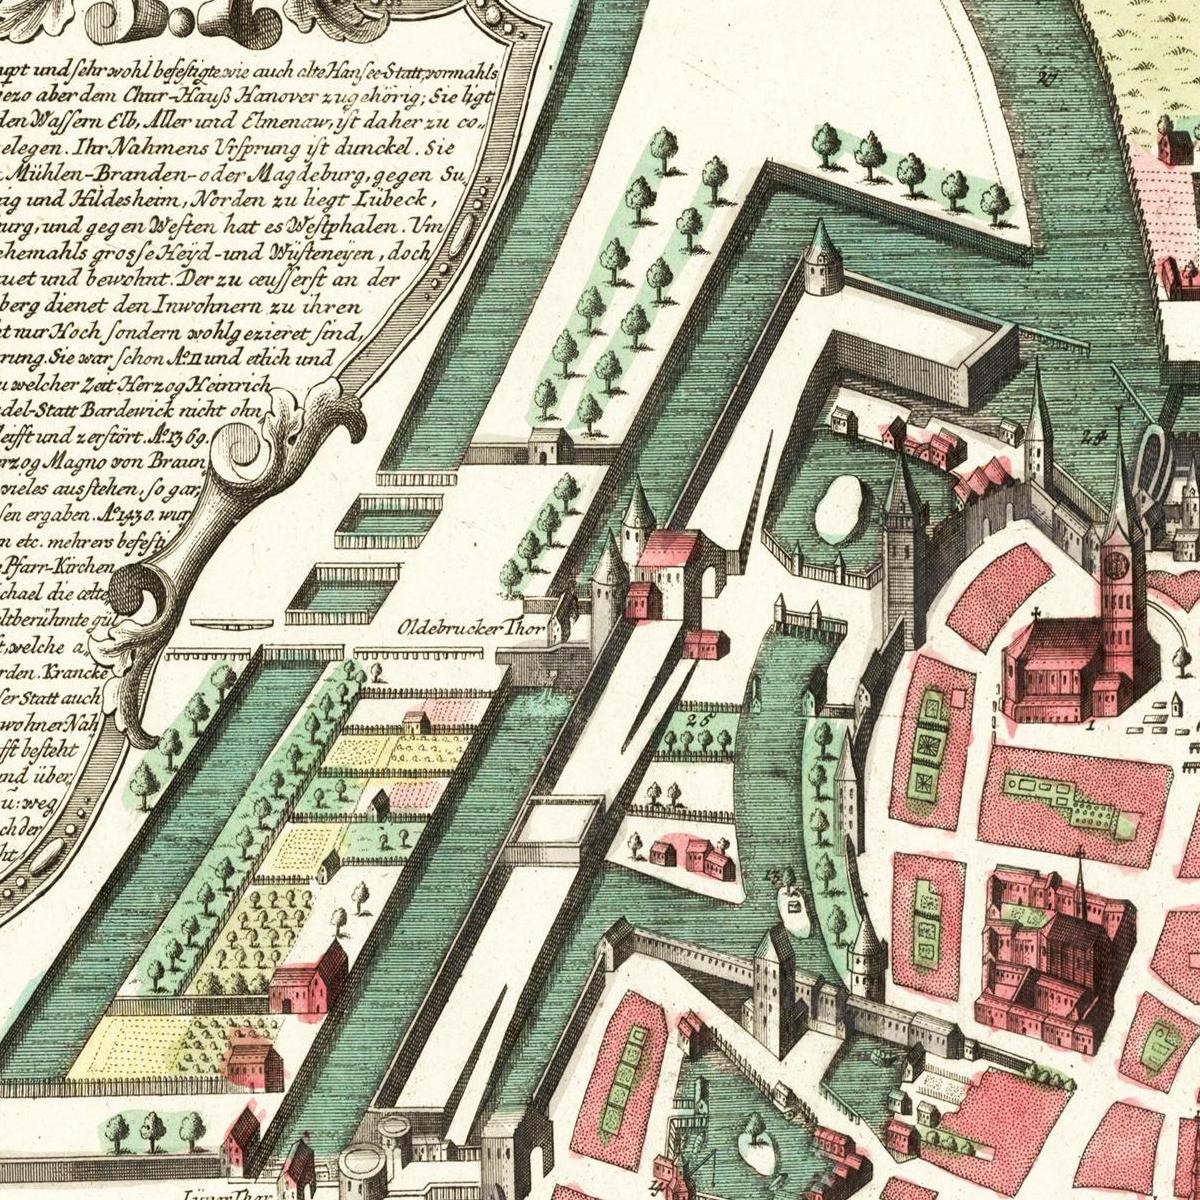 Historische Stadtansicht Lüneburg um 1740